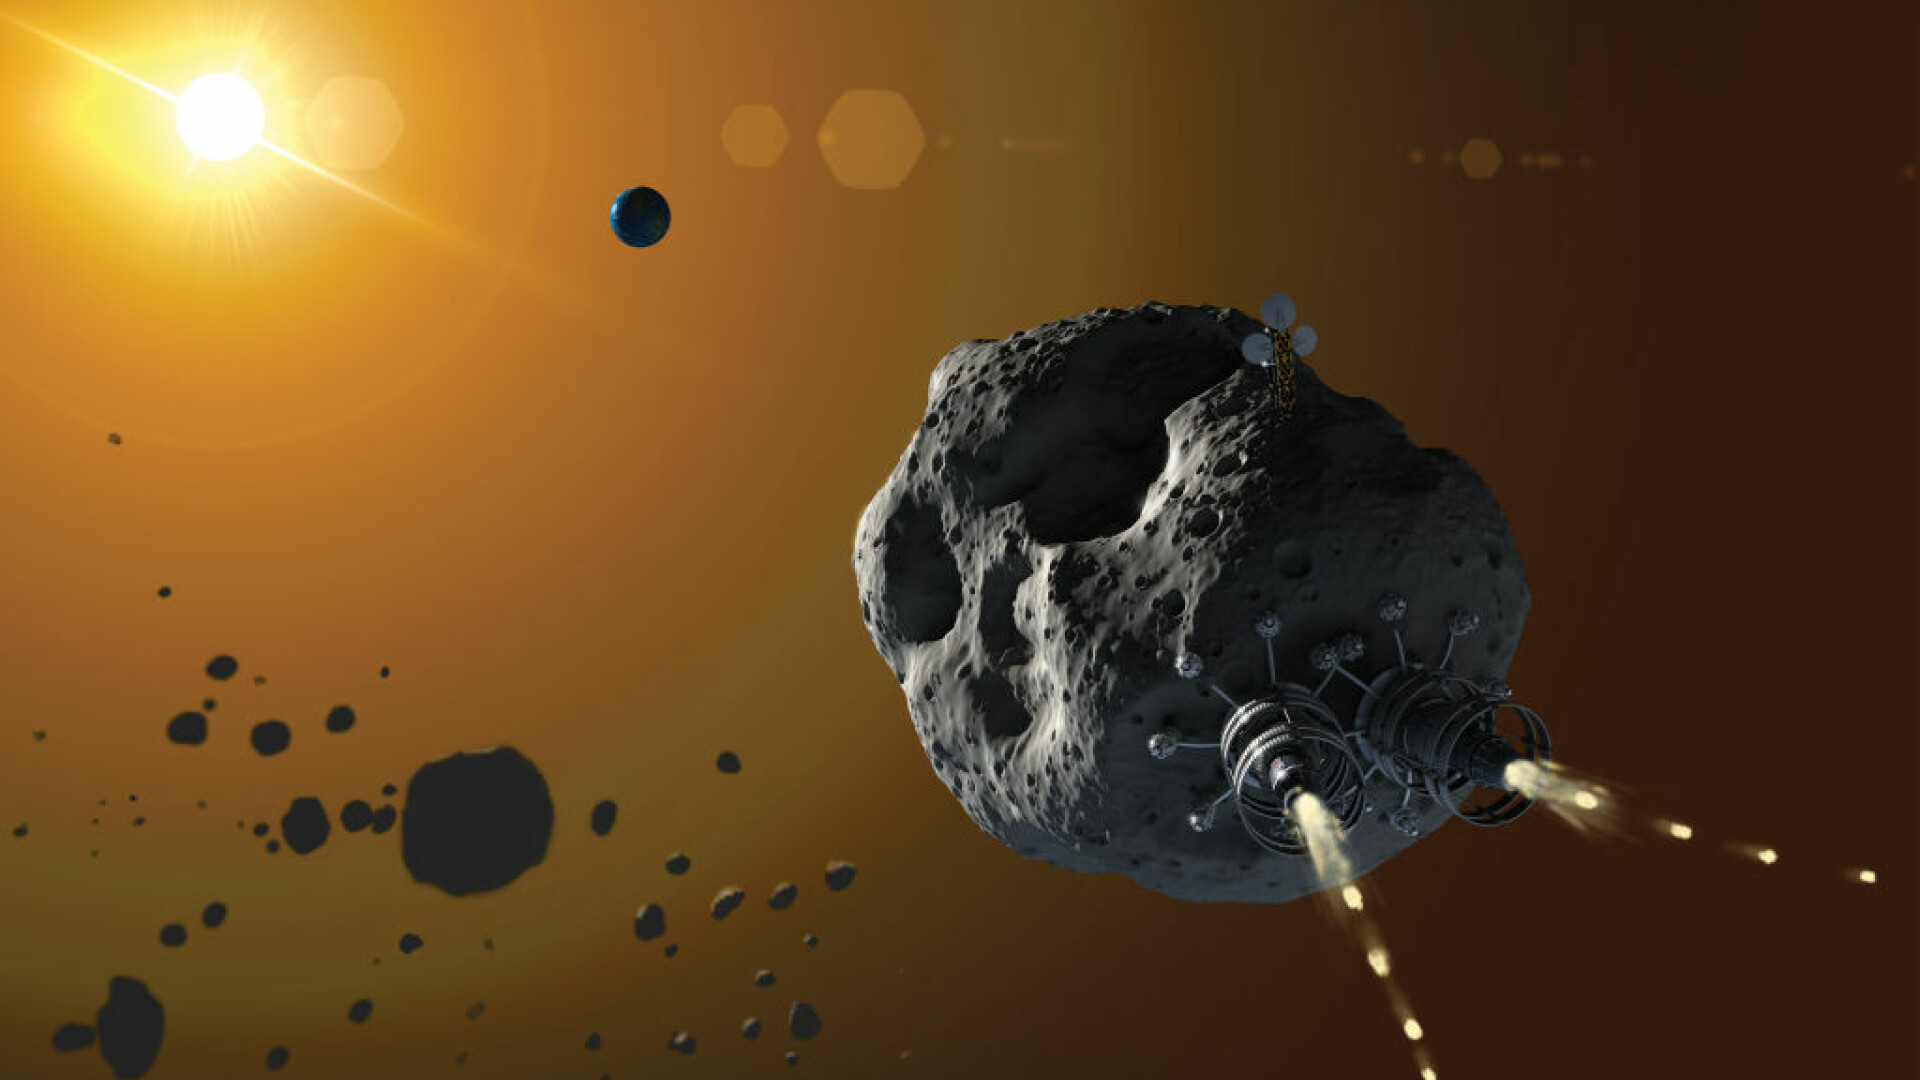 Asteroidul Apophis se apropie de Pământ și va fi interceptat de o sondă spațială deviată. Astronomii calculează pericolul